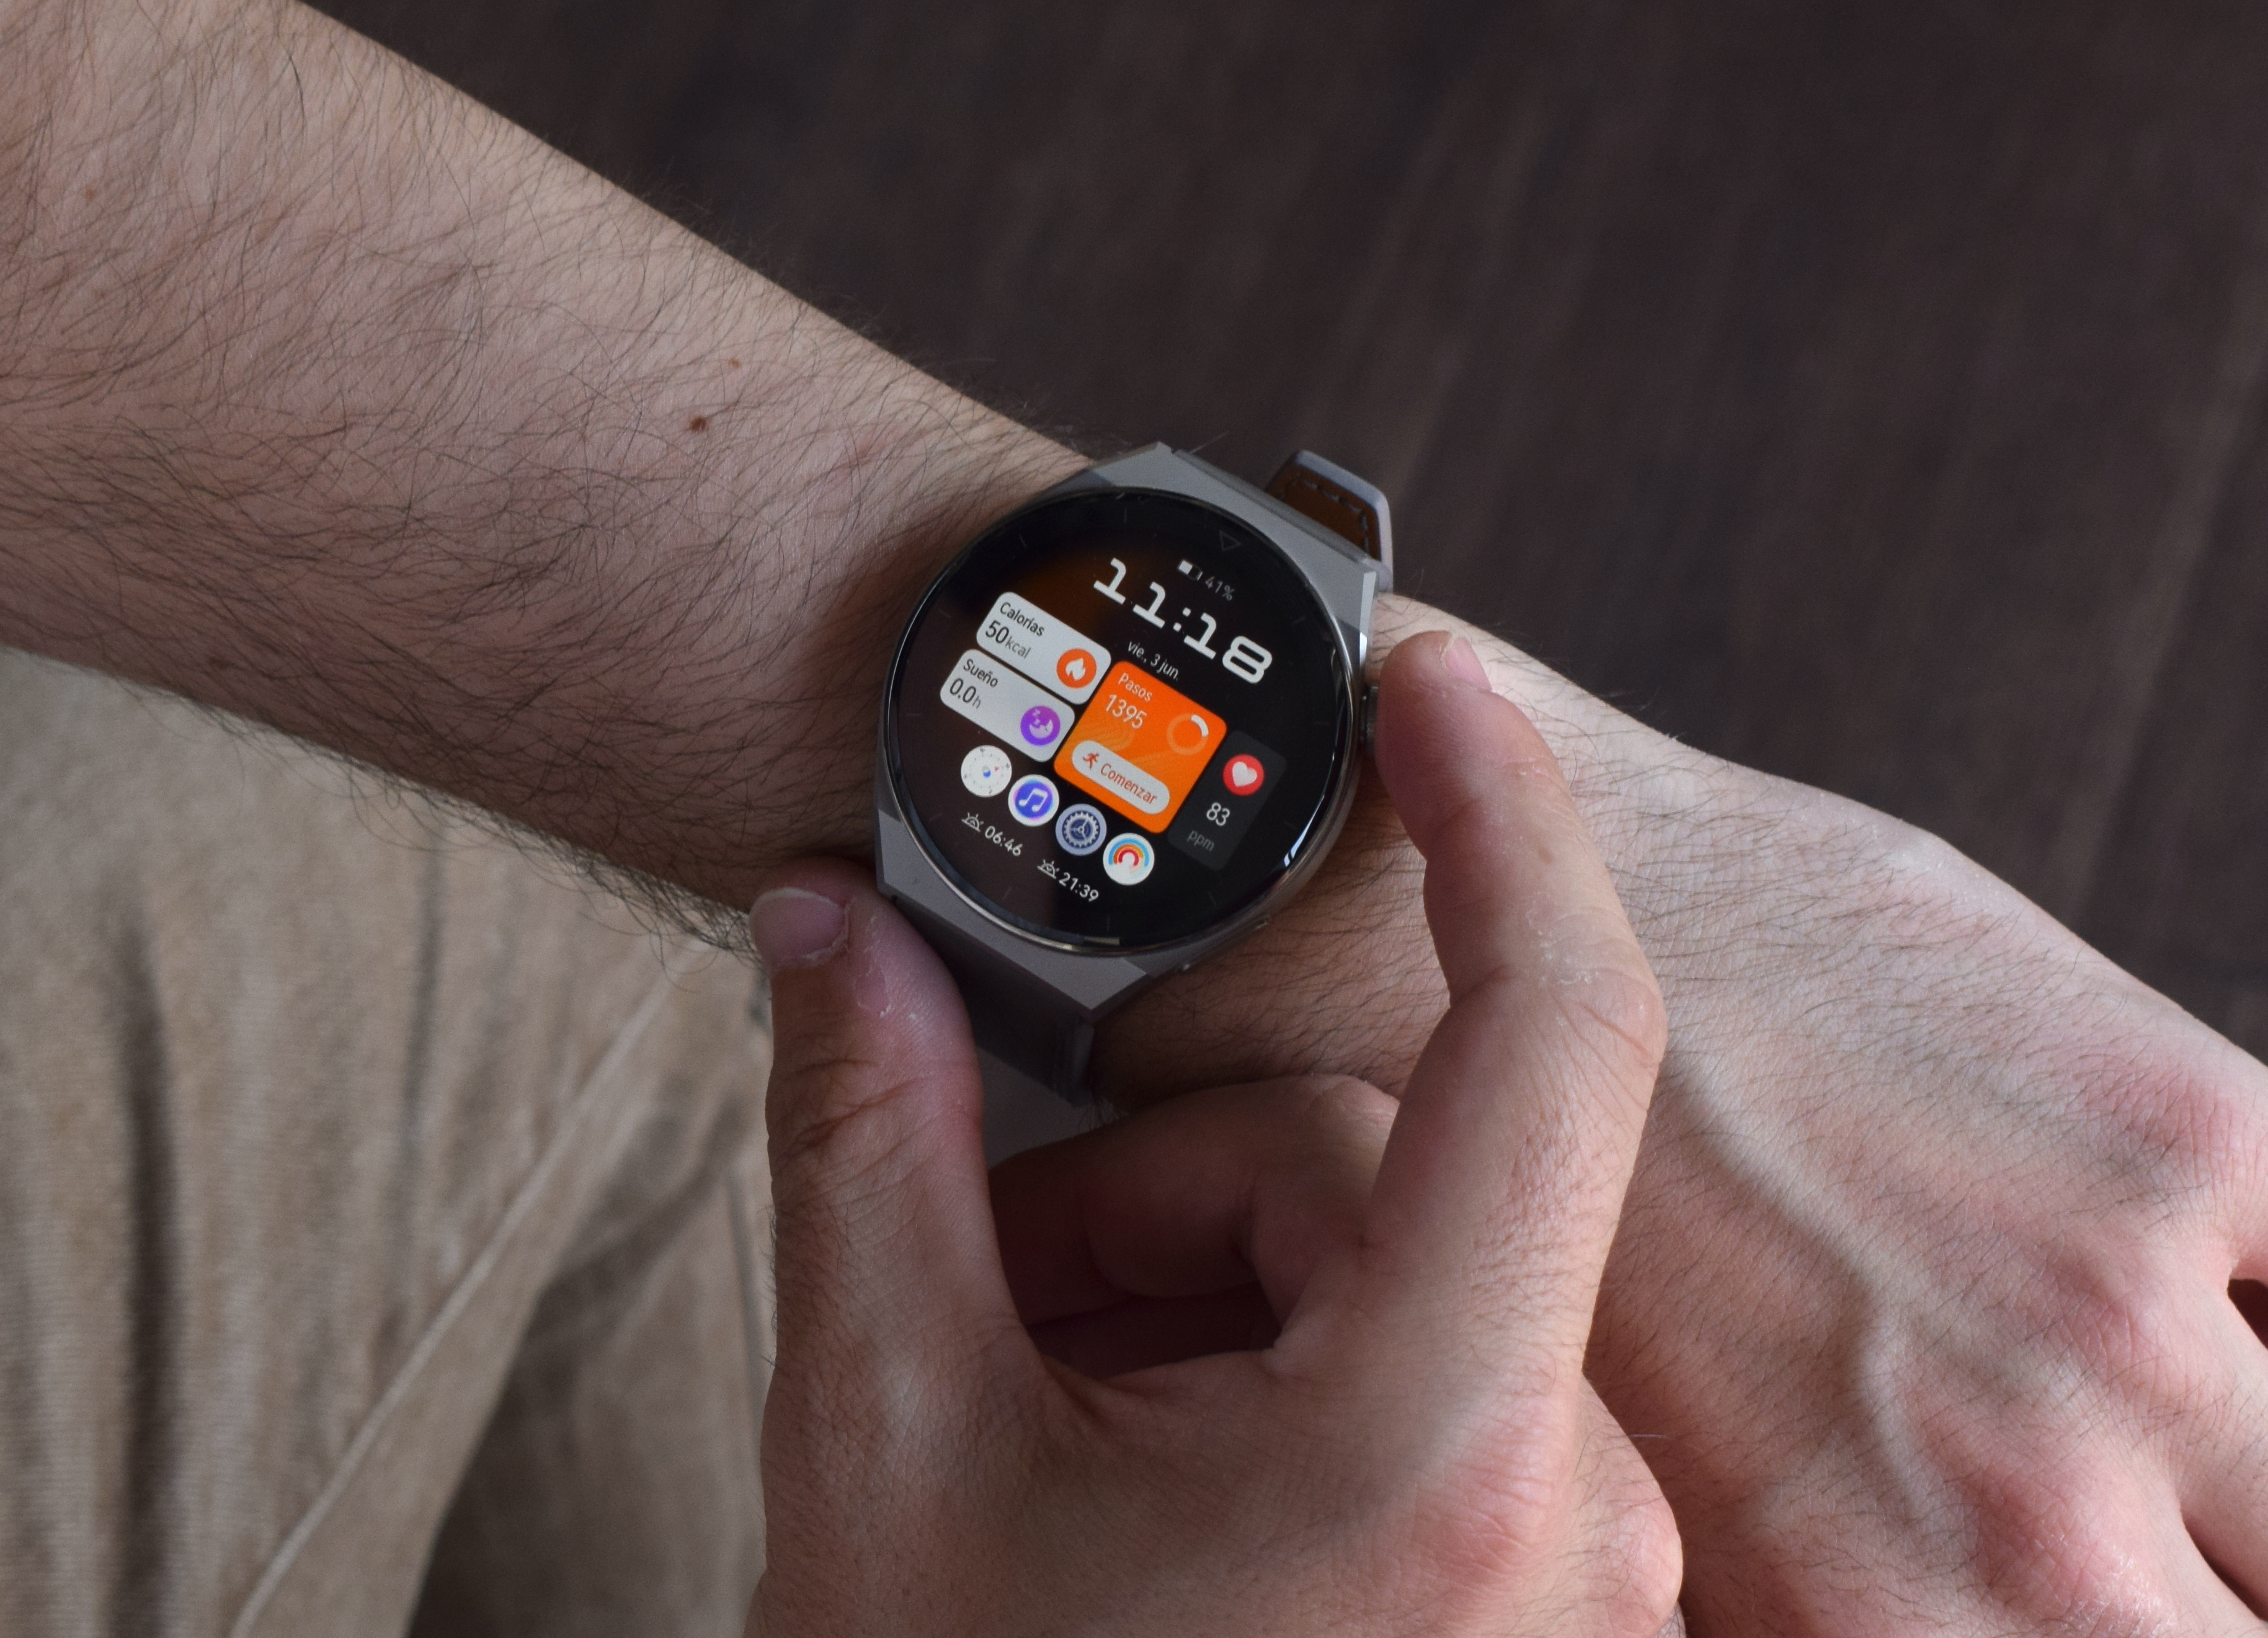 Huawei Watch: Uno de los relojes inteligentes más atractivos del